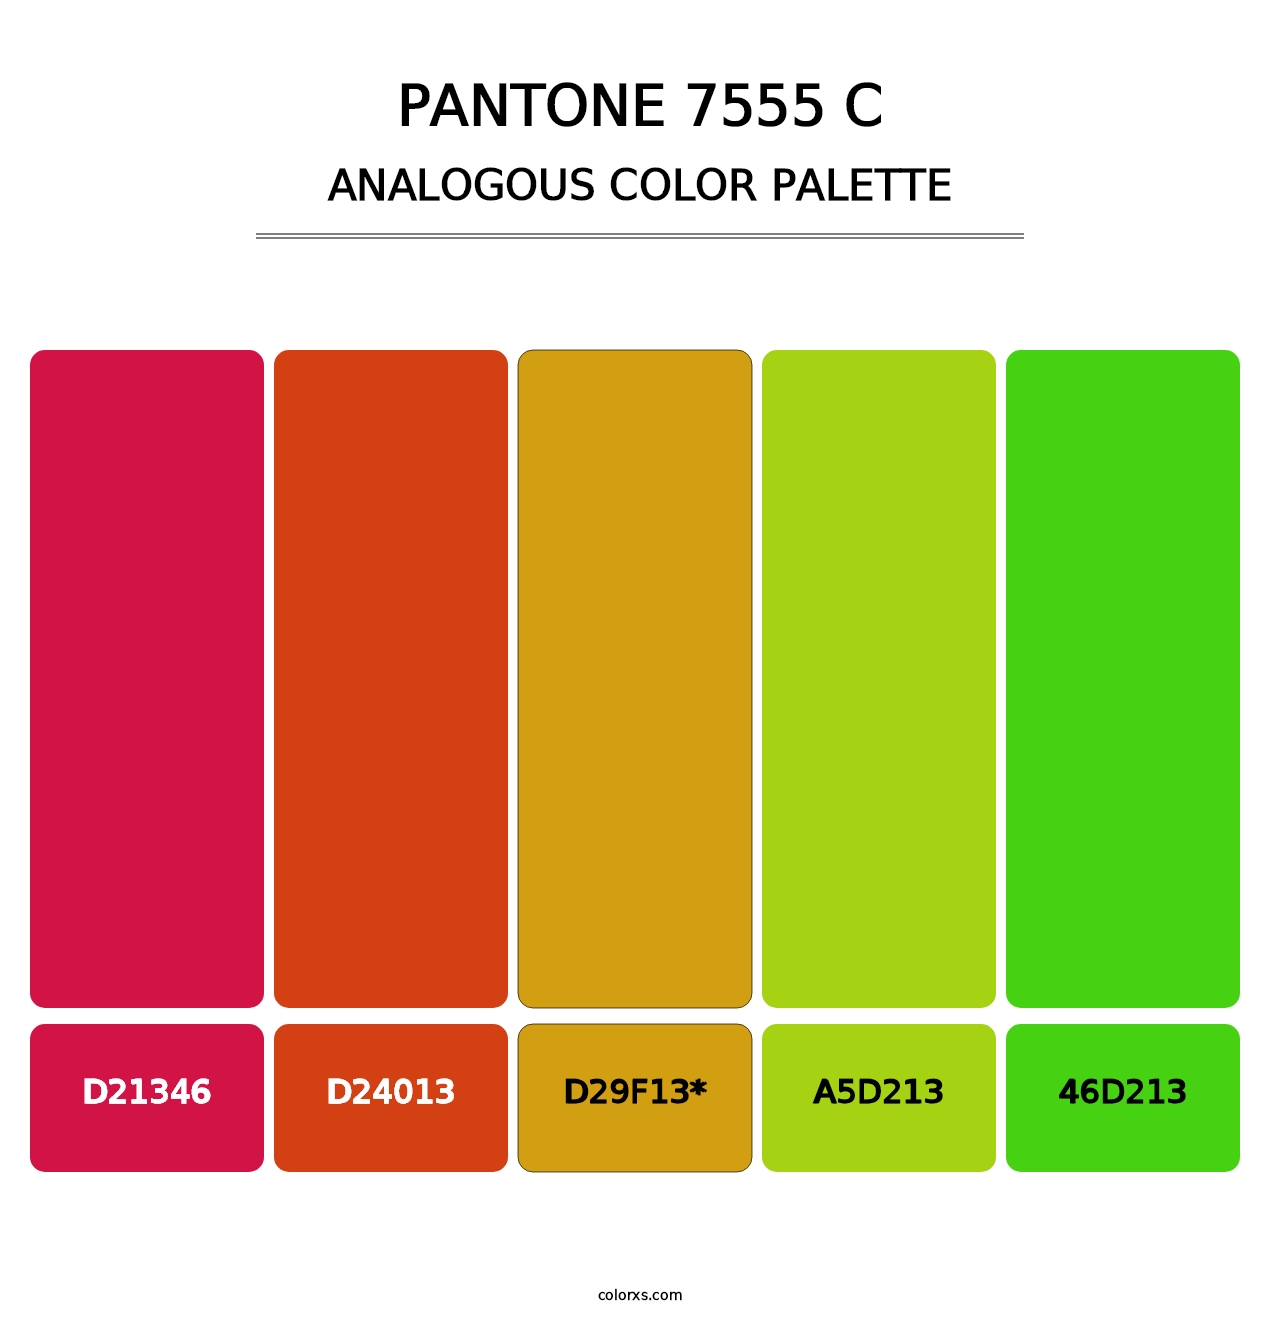 PANTONE 7555 C - Analogous Color Palette